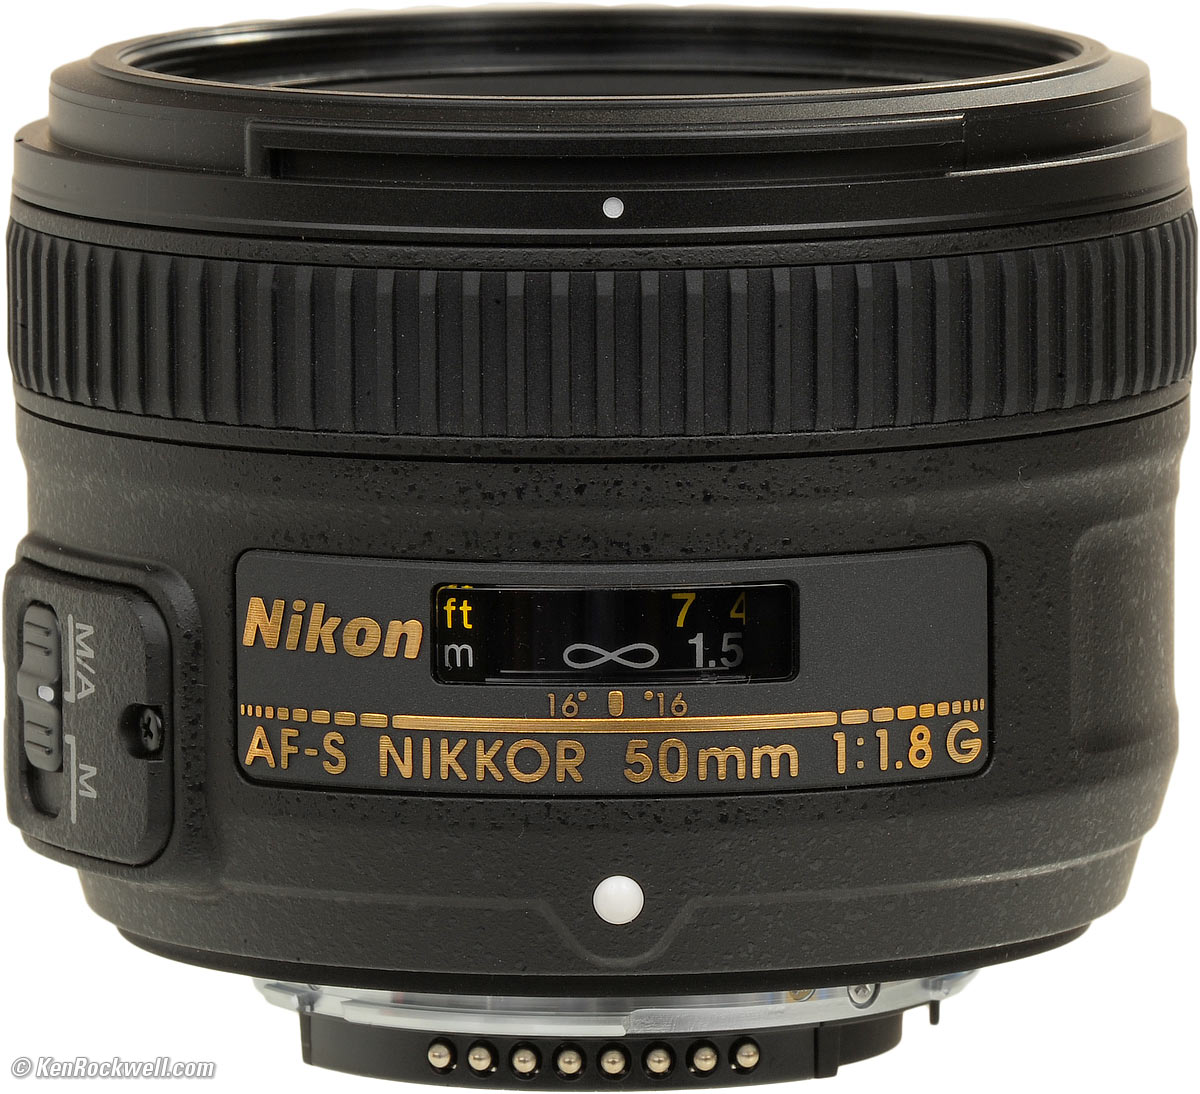 Nikon f100 serial number list